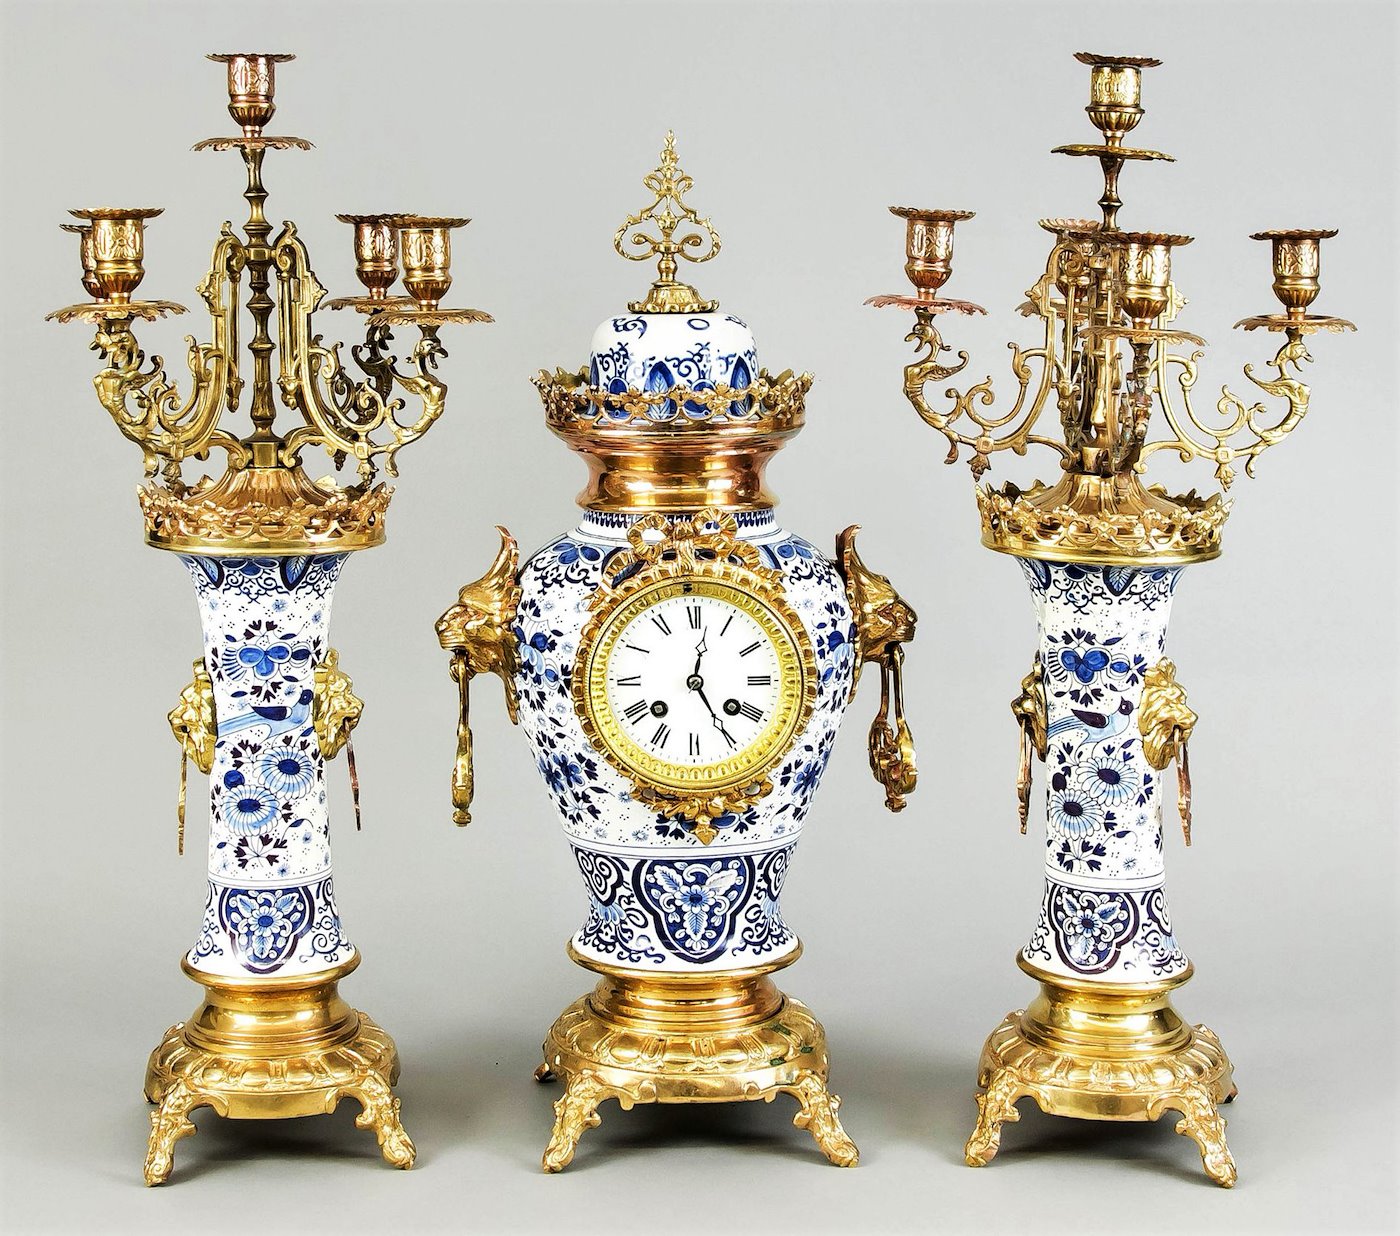 Boch La Louviére Delft 19. století - Třídílná krbová garnitura Vázových porcelánových hodin s francouzkým vřetenovým strojem a dvěma kandelábry pro 5 svící 